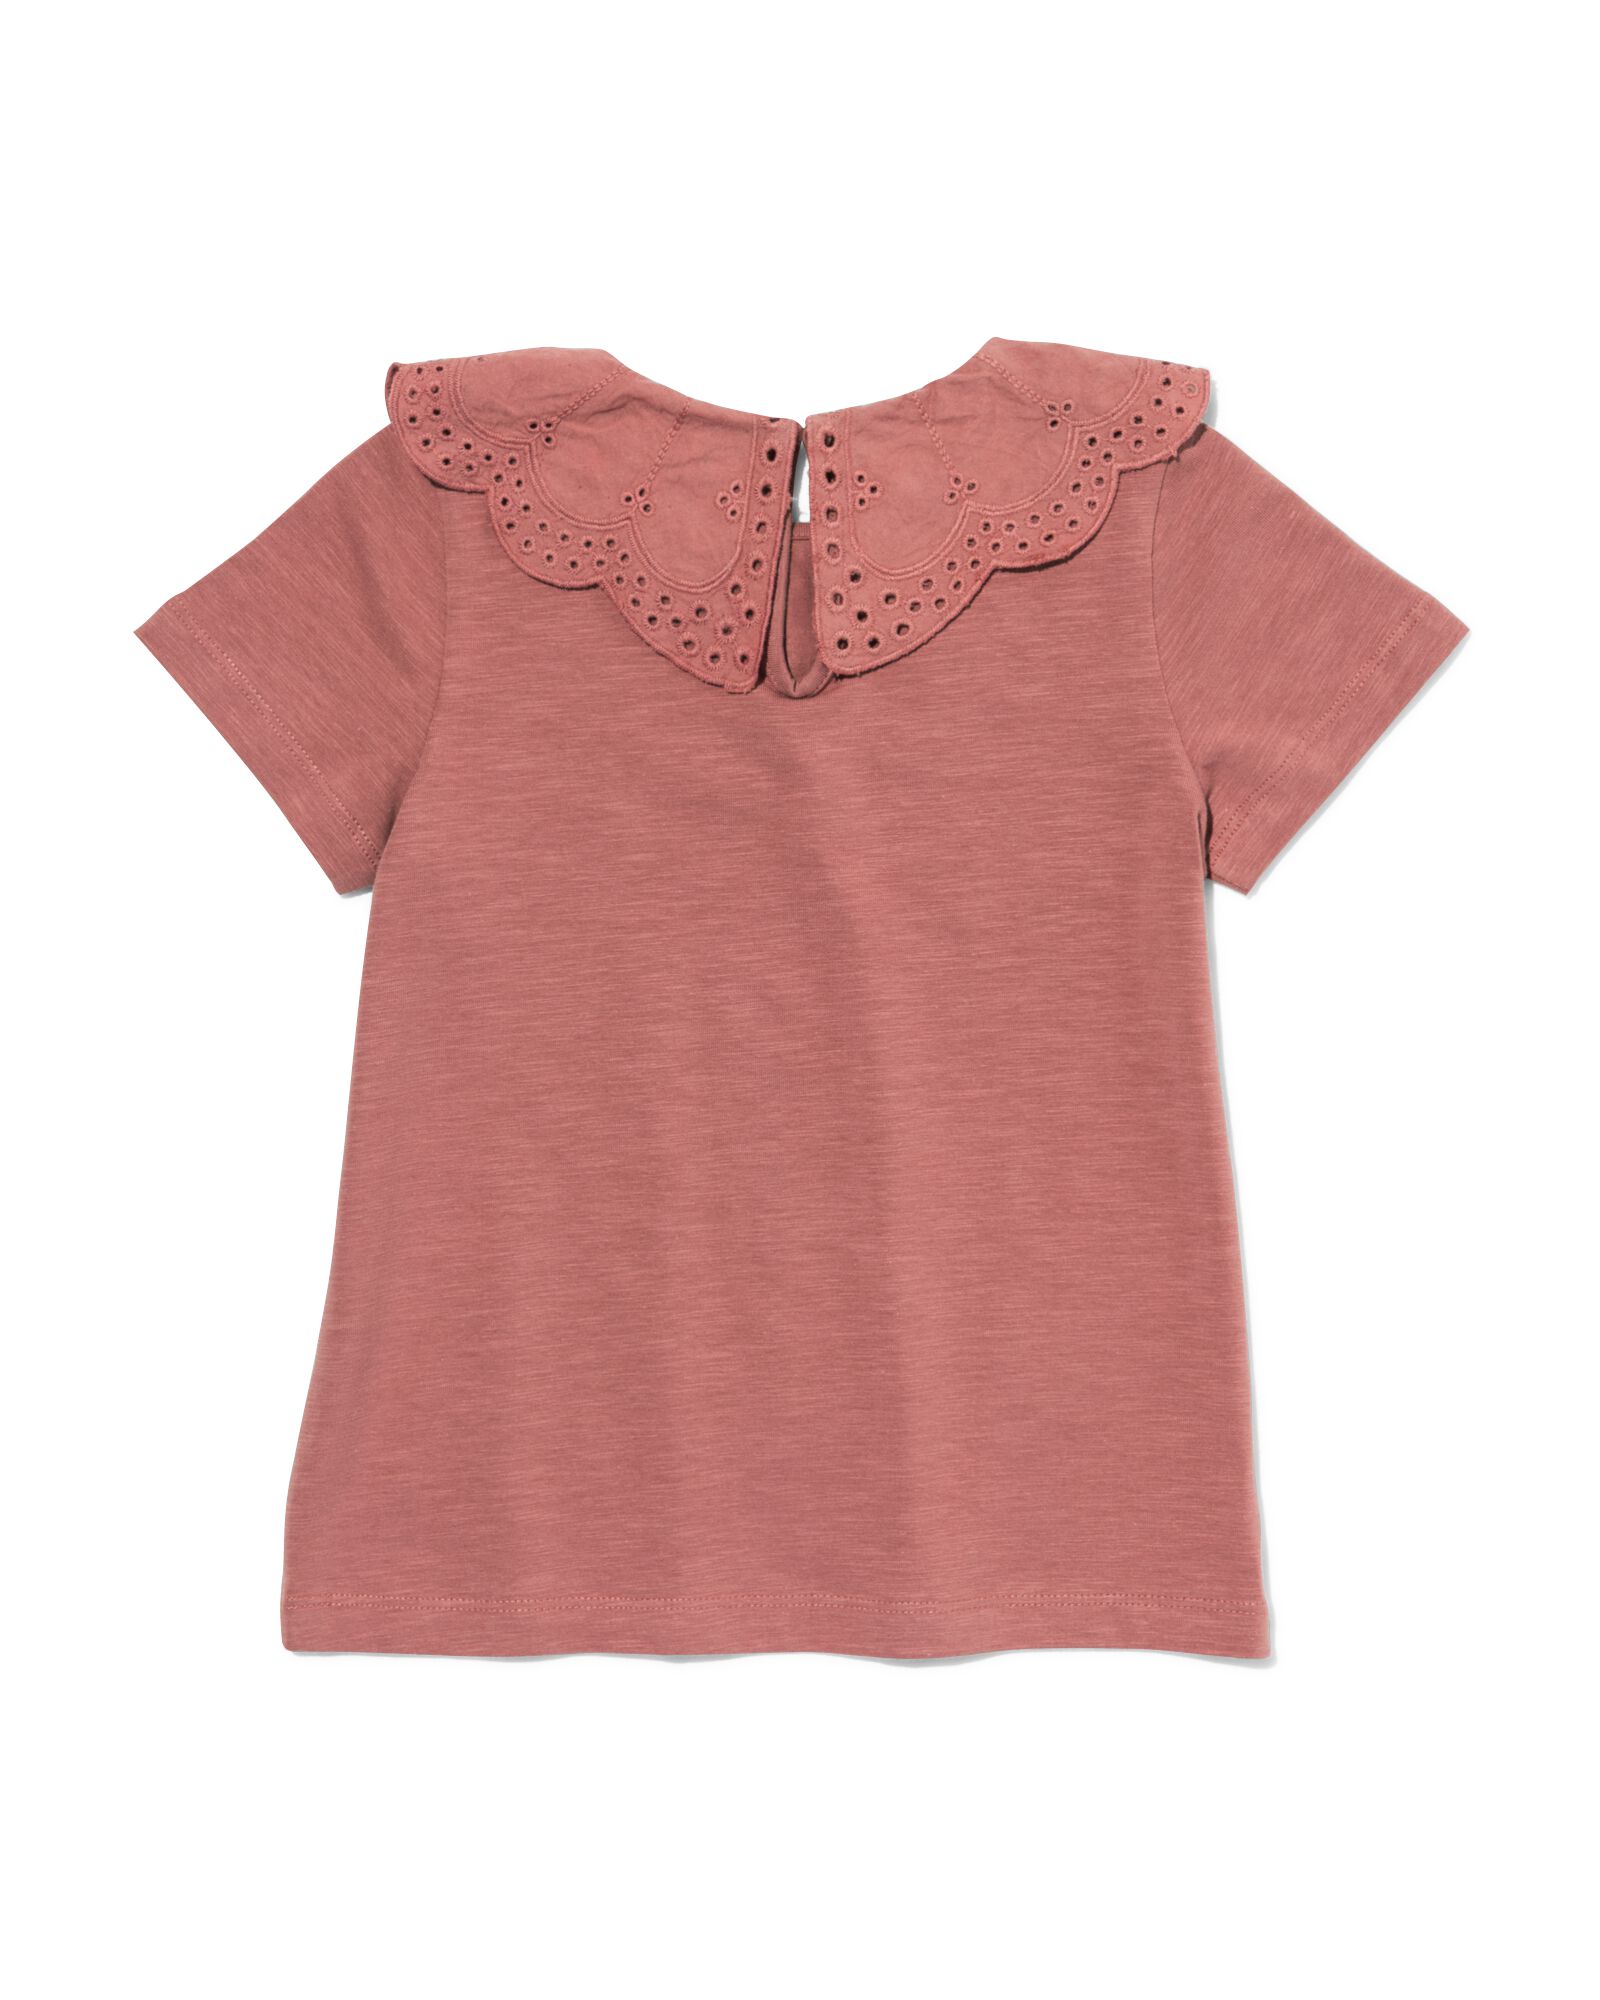 t-shirt enfant avec col en broderie roze 110/116 - 30874049 - HEMA